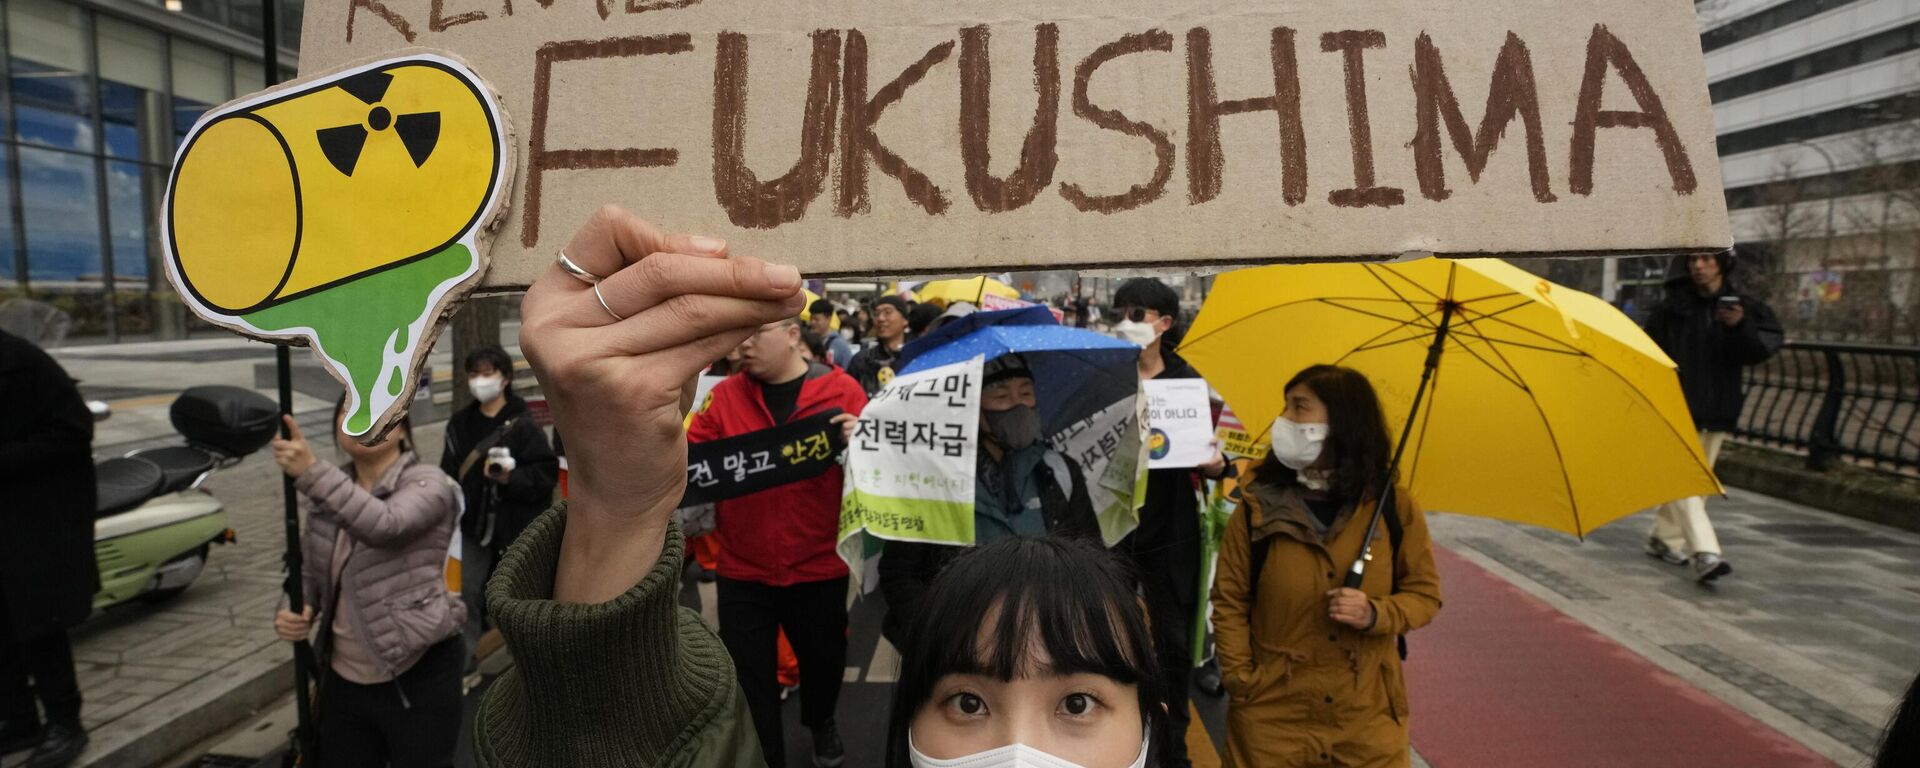 Activistas medioambientales marchan durante una concentración con motivo del 12.º aniversario del desastre nuclear de Fukushima, causado por el terremoto y el tsunami del 11 de marzo en Japón, en Seúl, Corea del Sur, jueves 9 de marzo de 2023 - Sputnik Mundo, 1920, 13.12.2023